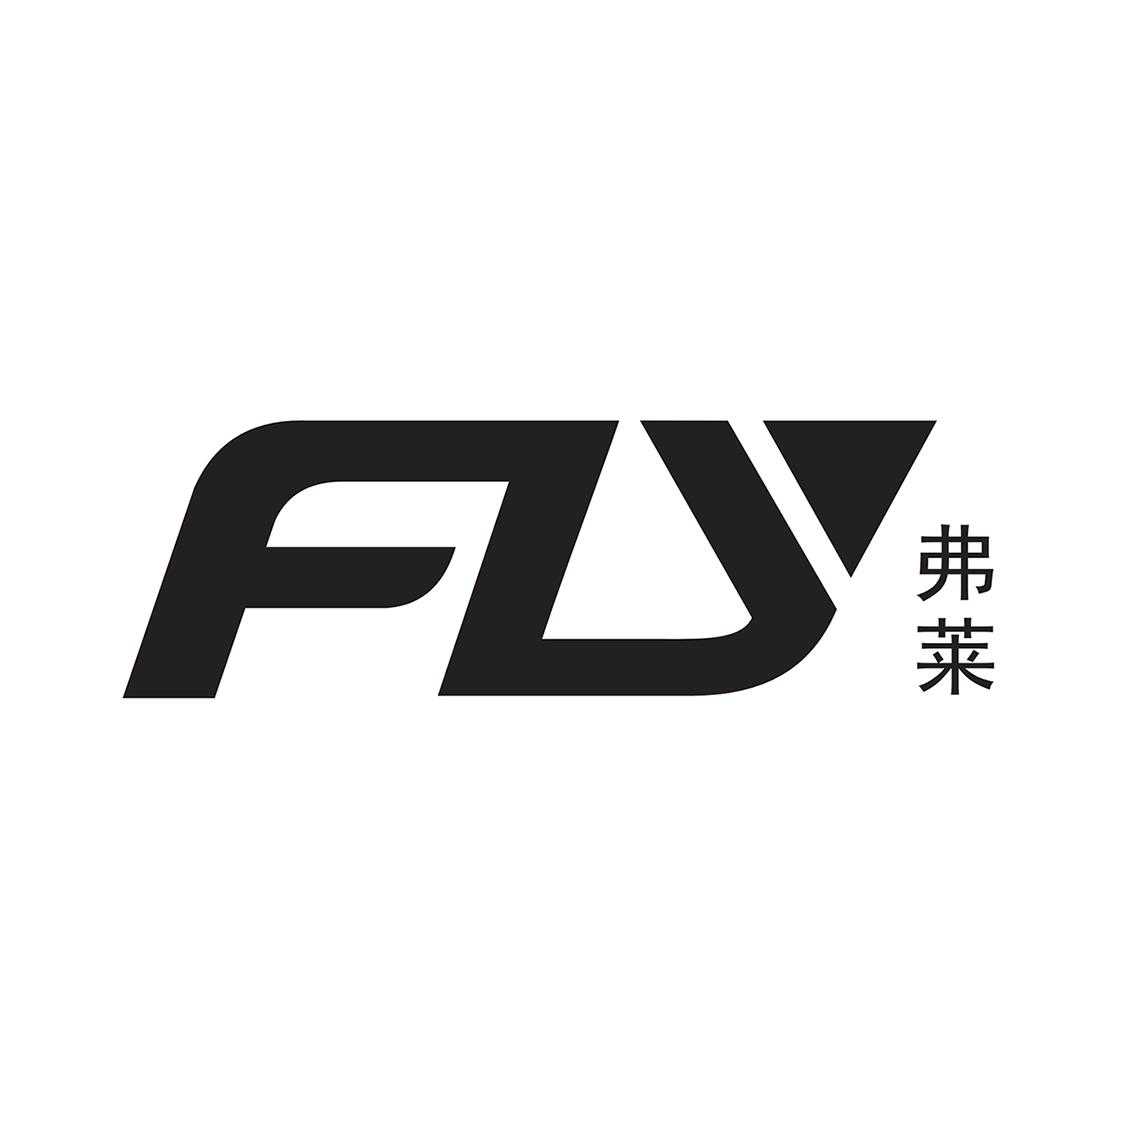 商标文字弗莱 fly商标注册号 55478039,商标申请人深圳市远德鑫科技